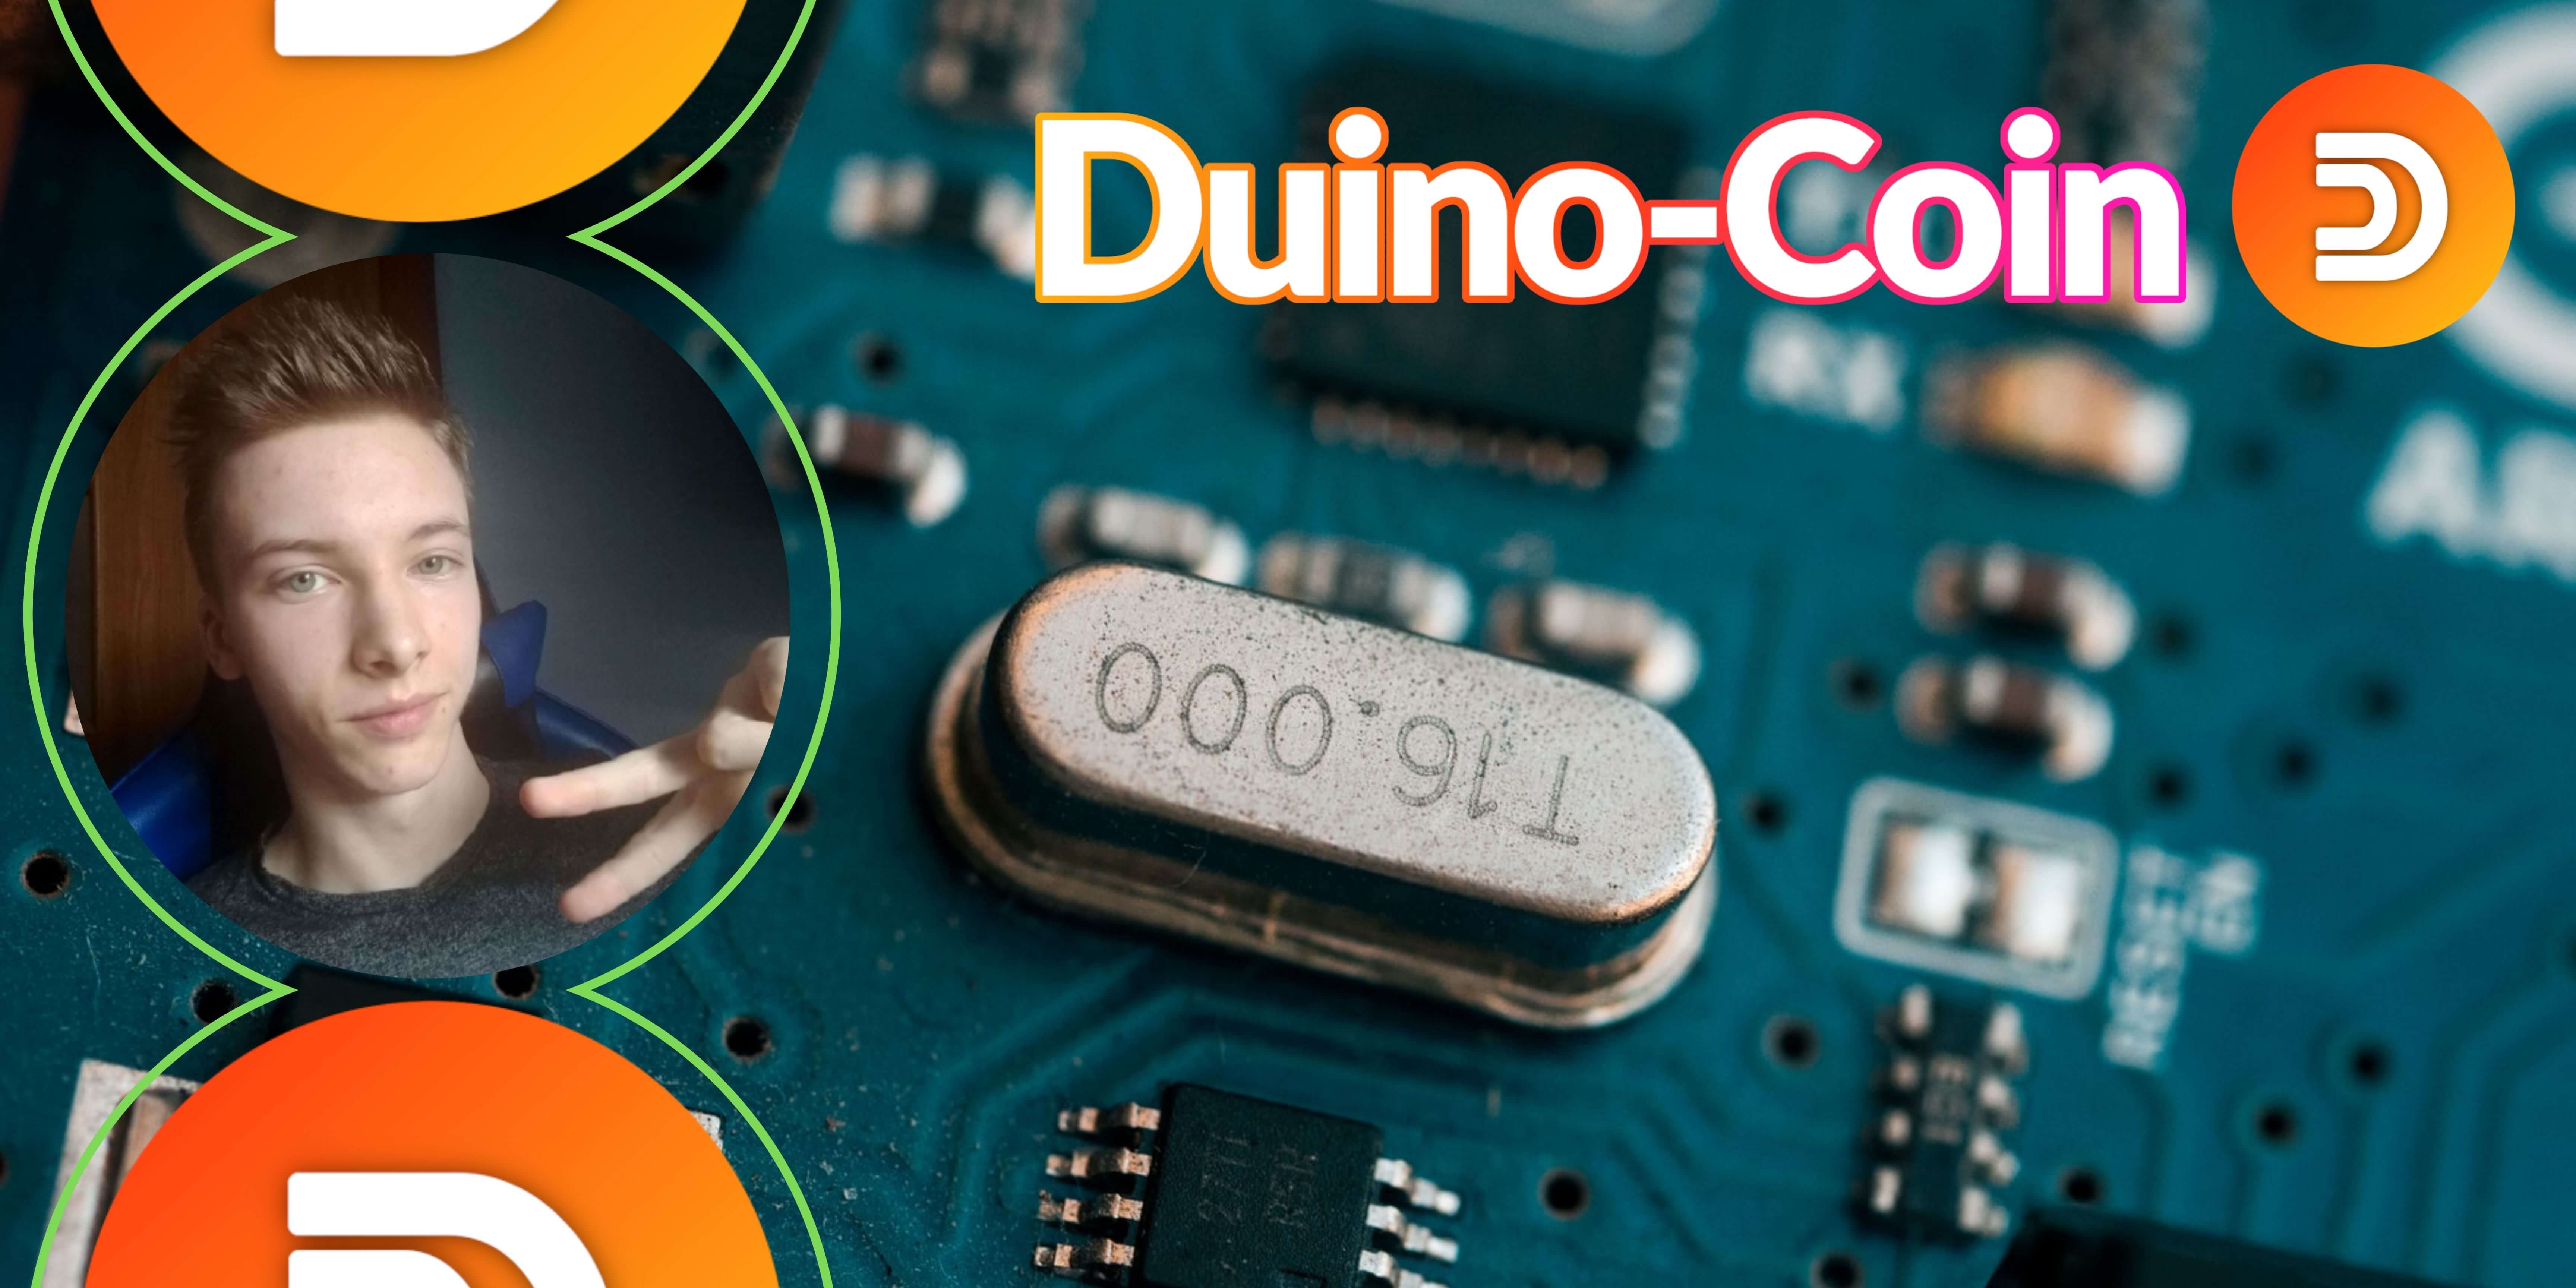 Entrevista con el creador de Duino-Coin: Robert Piotrowski